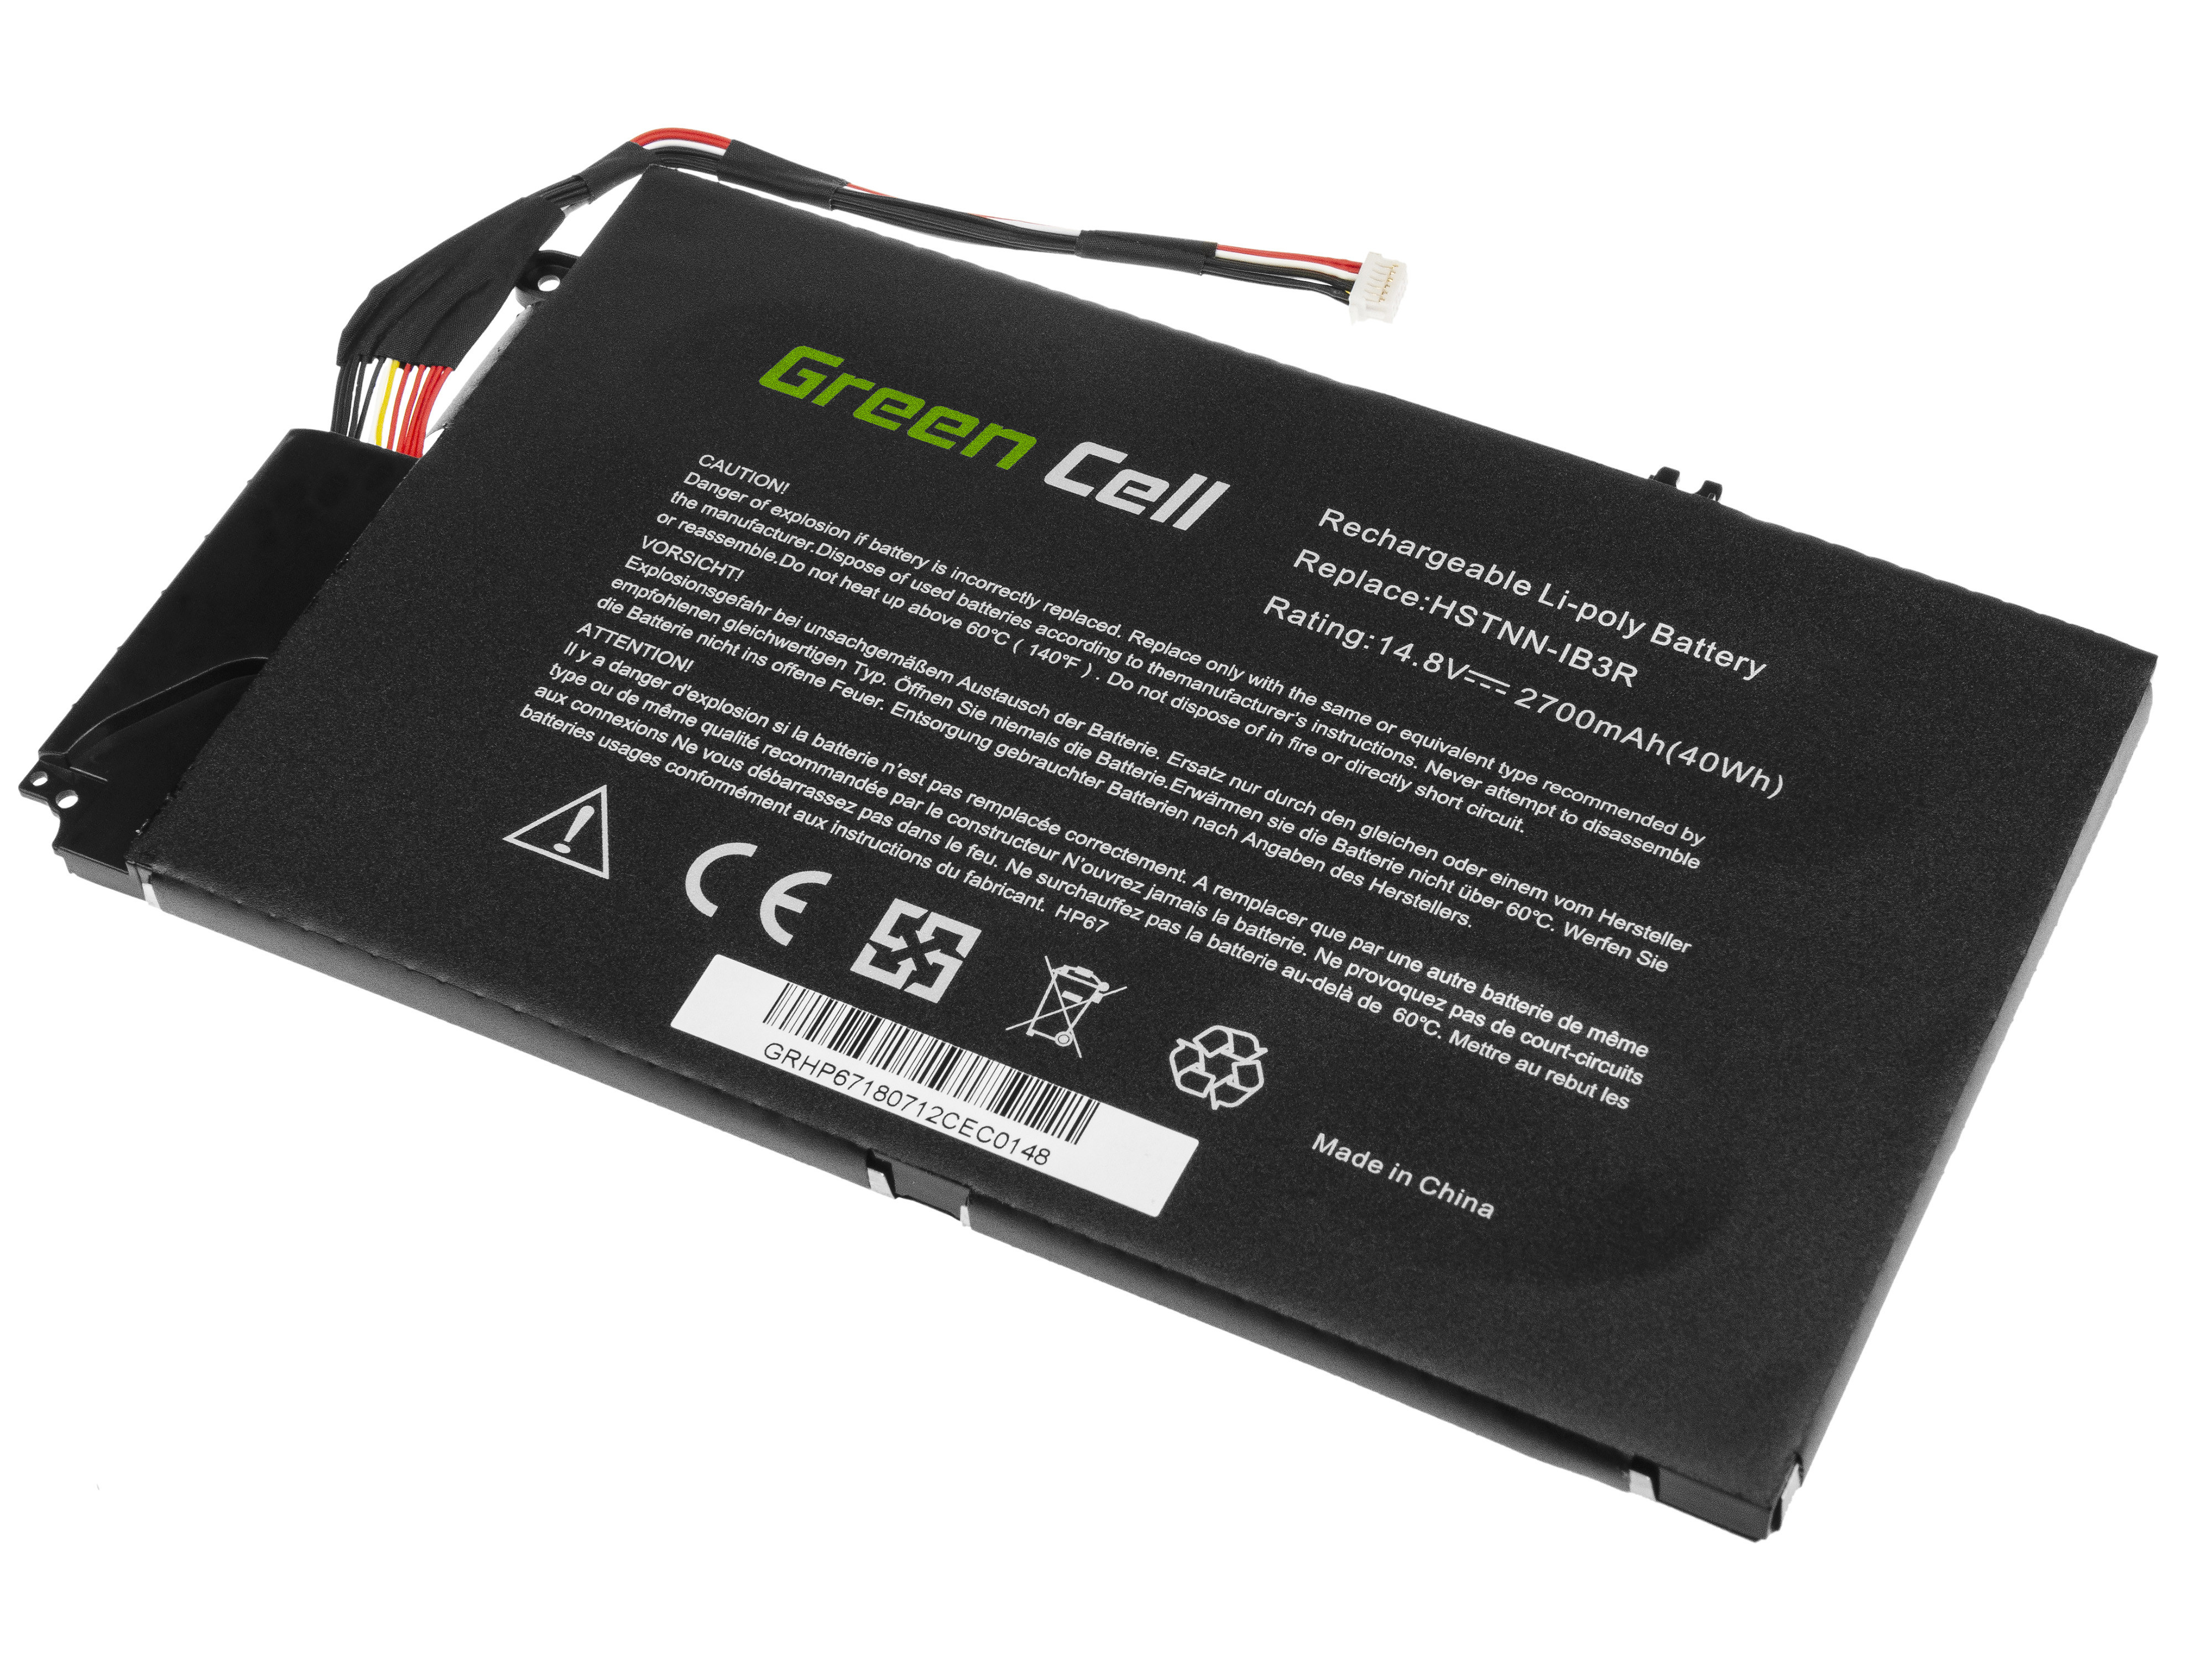 Green Cell Battery EL04XL HSTNN-IB3R HSTNN-UB3R for HP Envy 4 4-1110EW 4-1110SW 4-1120EW 4-1120SW 4-1130EW 4-1210EW 4-1210SW